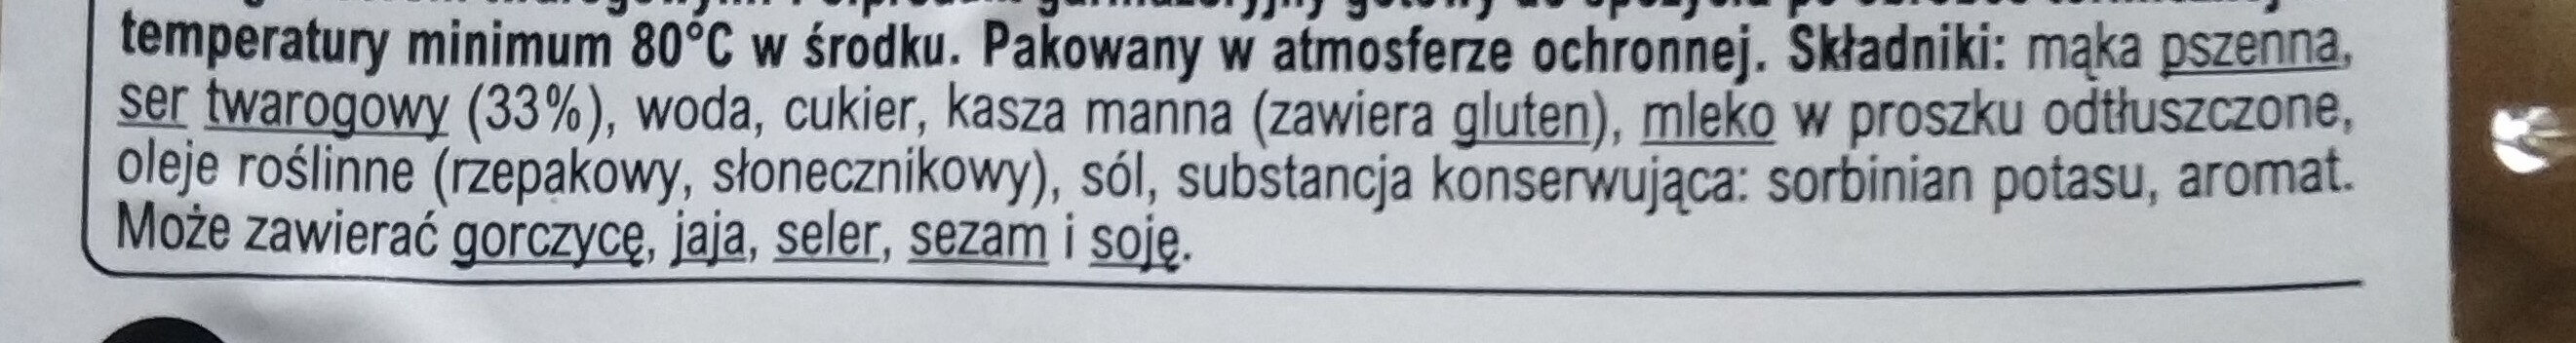 pierogi z serem na słodko - Ingredients - pl